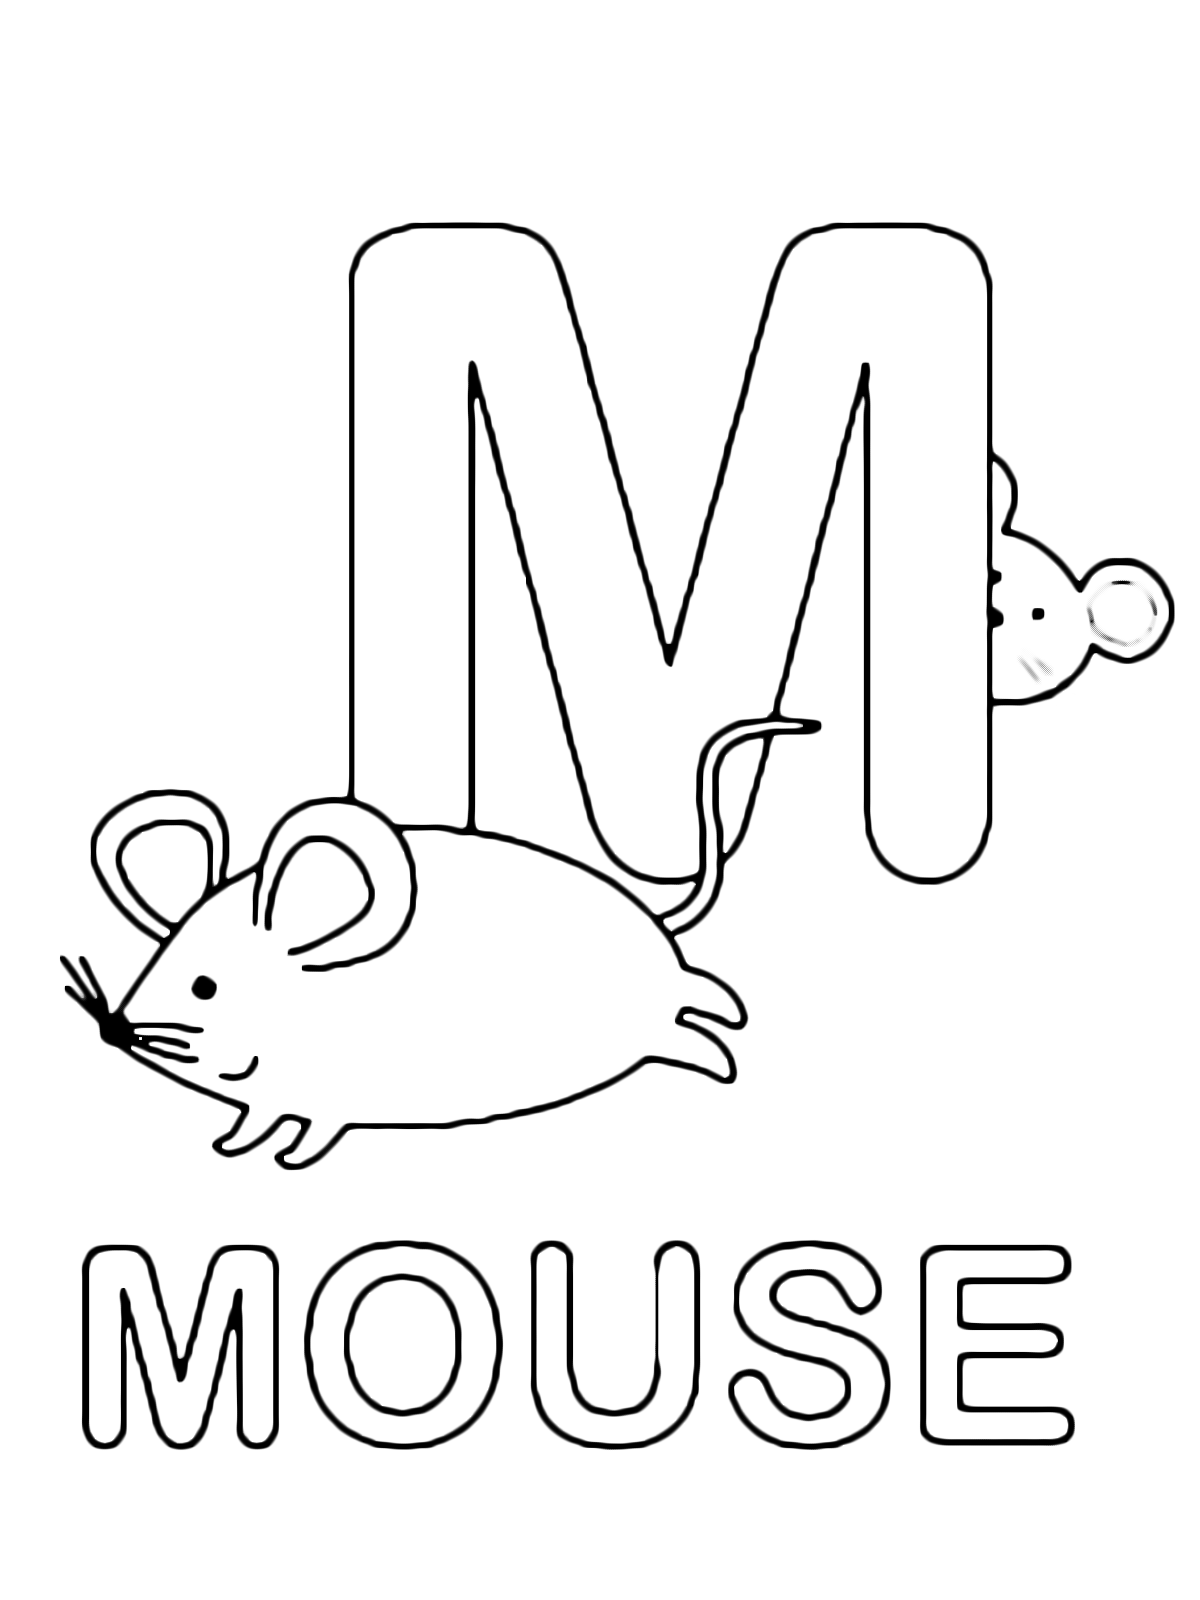 Lettere e numeri - Lettera M in stampatello di mouse (topo) in Inglese